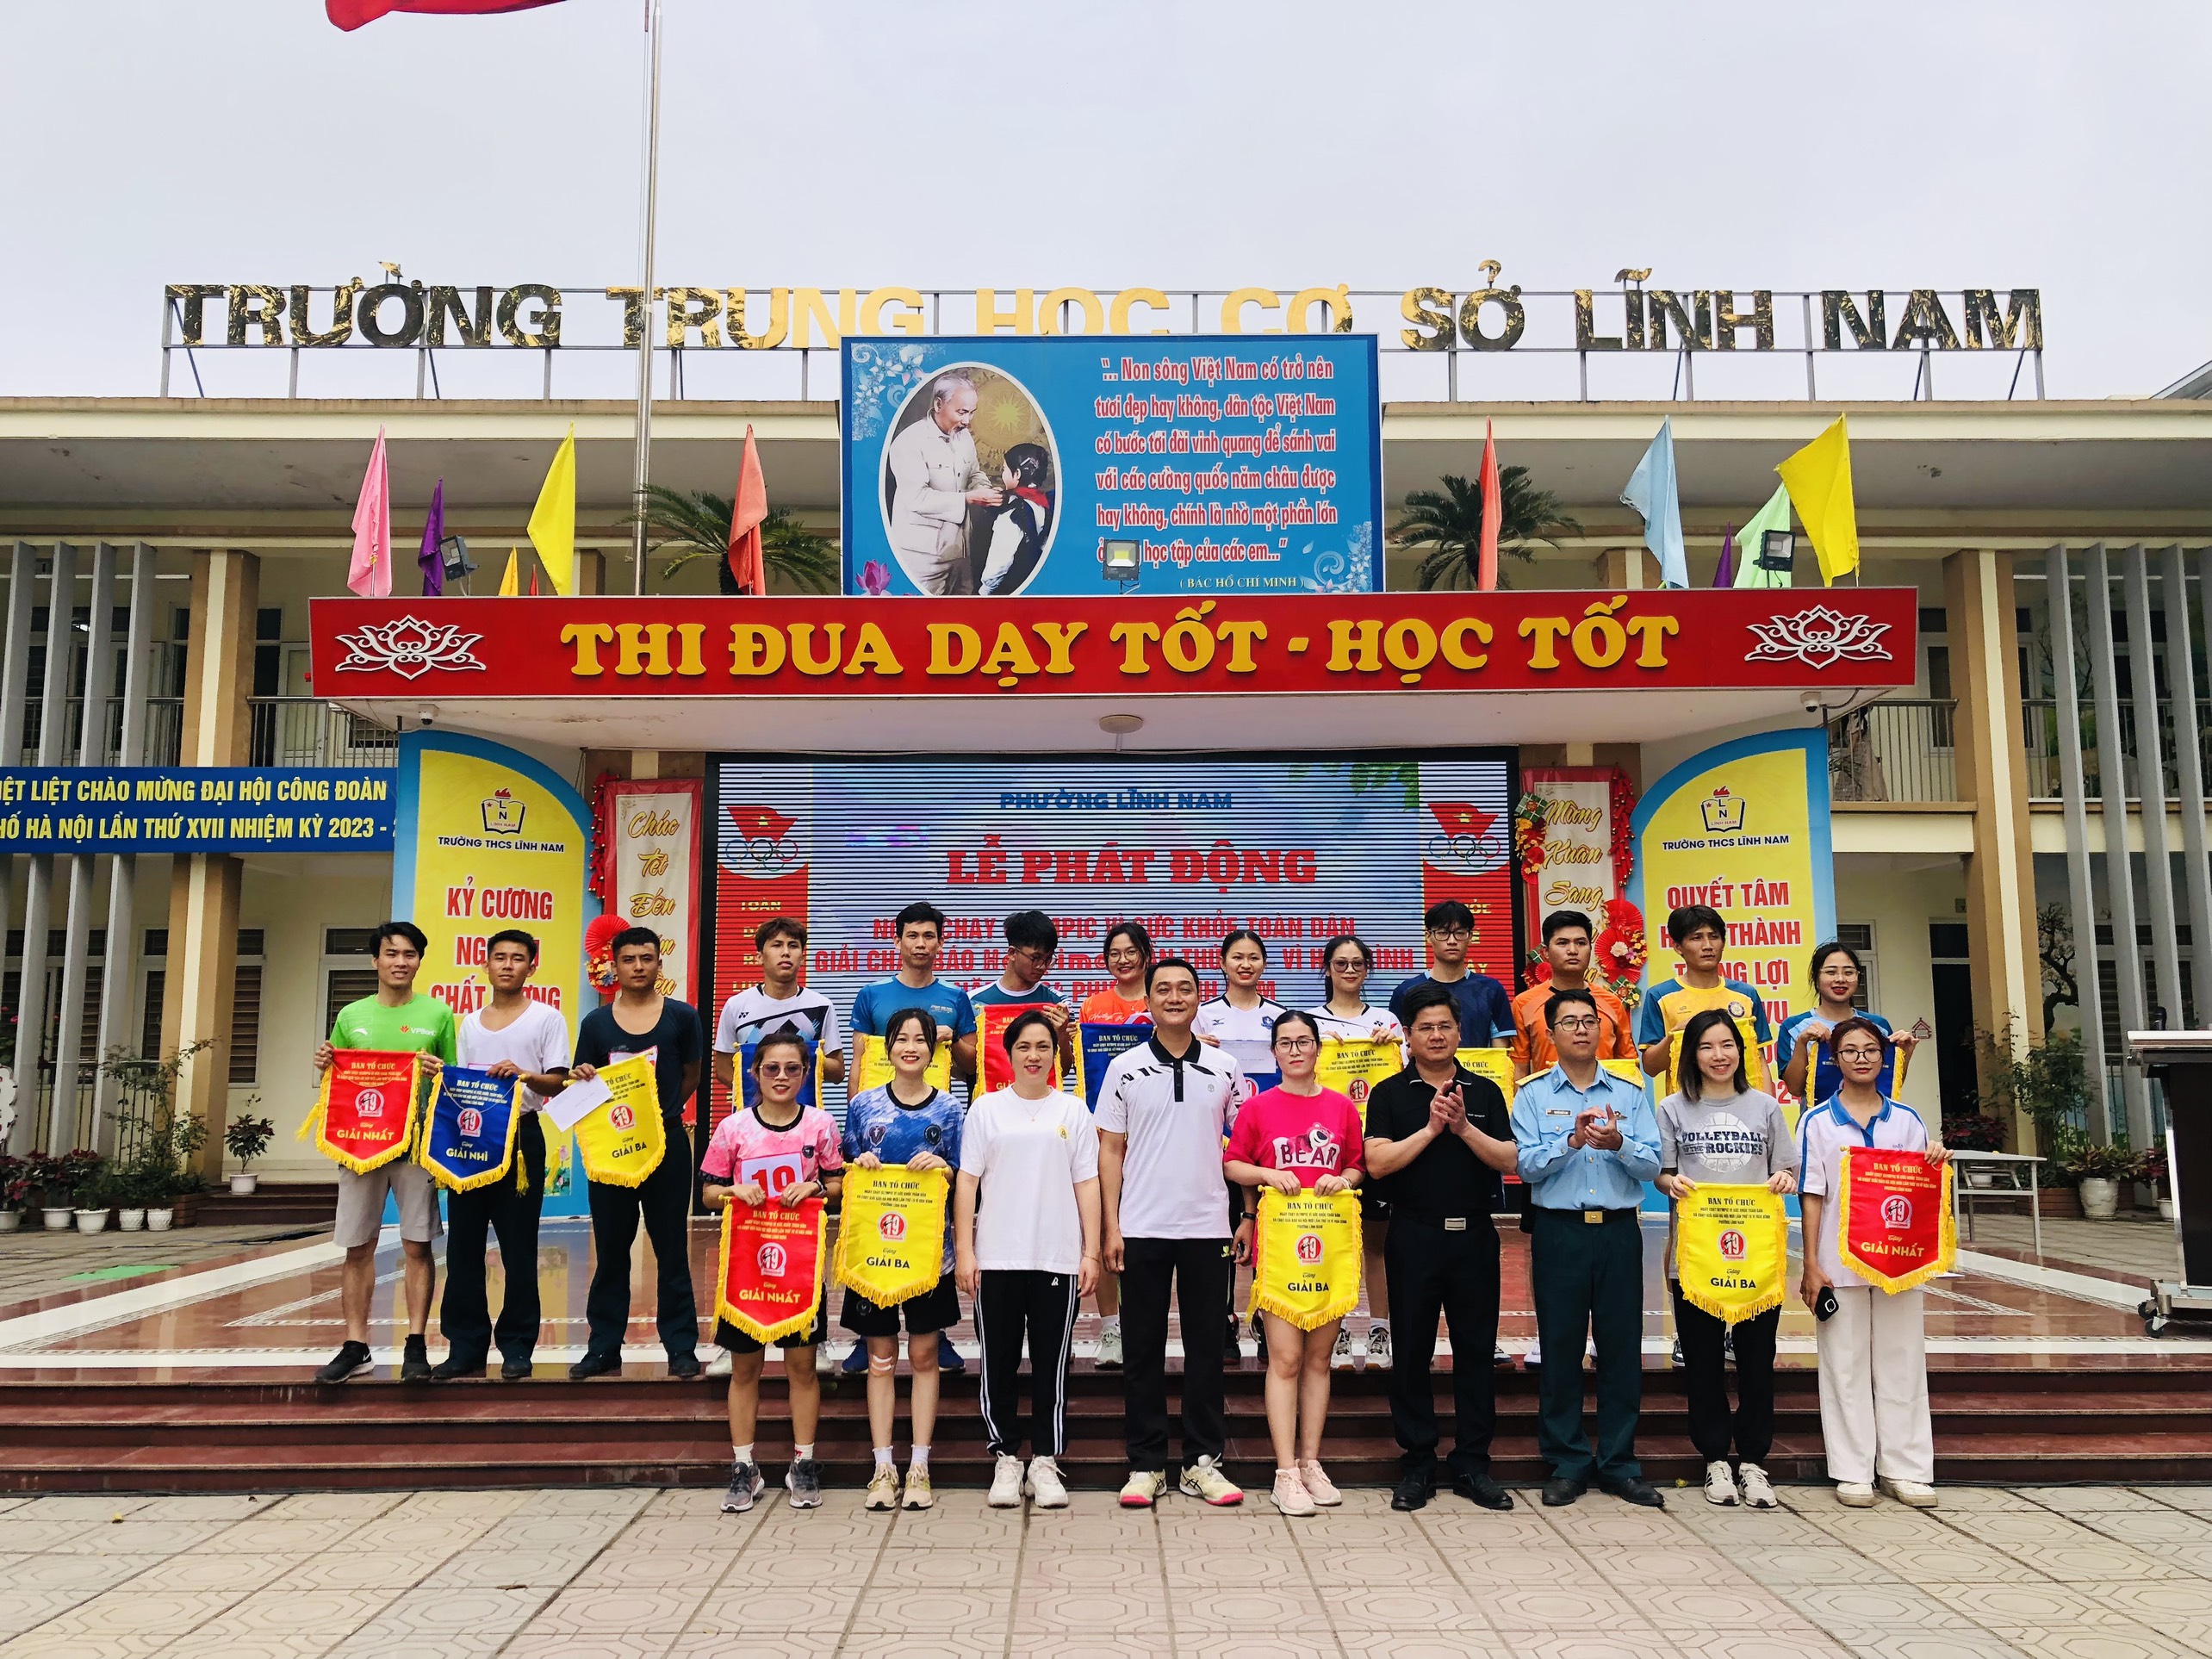 Phường Lĩnh Nam tổ chức Lễ phát động Ngày chạy Olympic vì sức khỏe toàn dân, khai mạc giải chạy báo Hà Nội mới lần thứ 19 vì hòa bình năm 2024. 